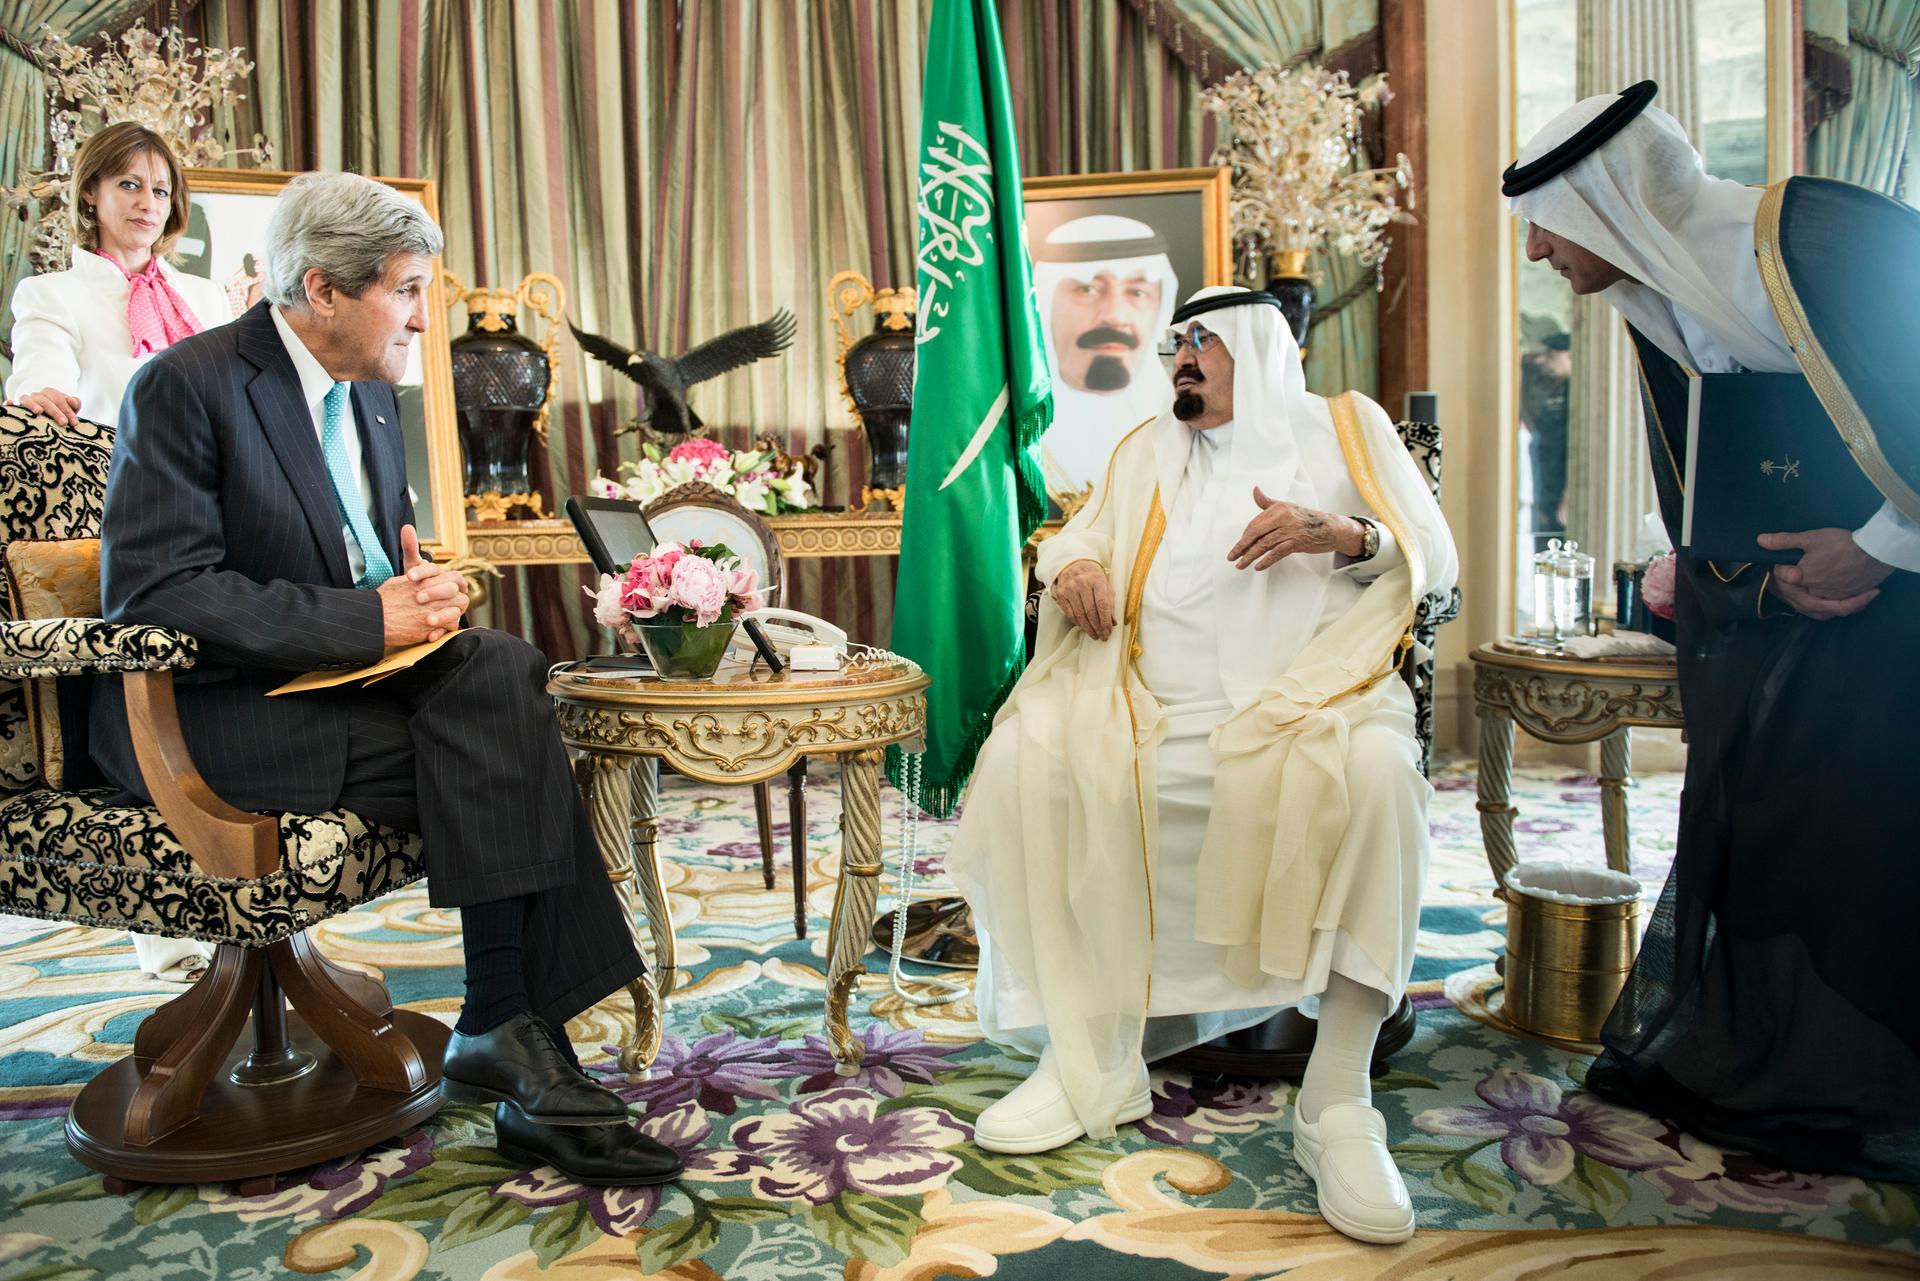 King Abdullah and John Kerry